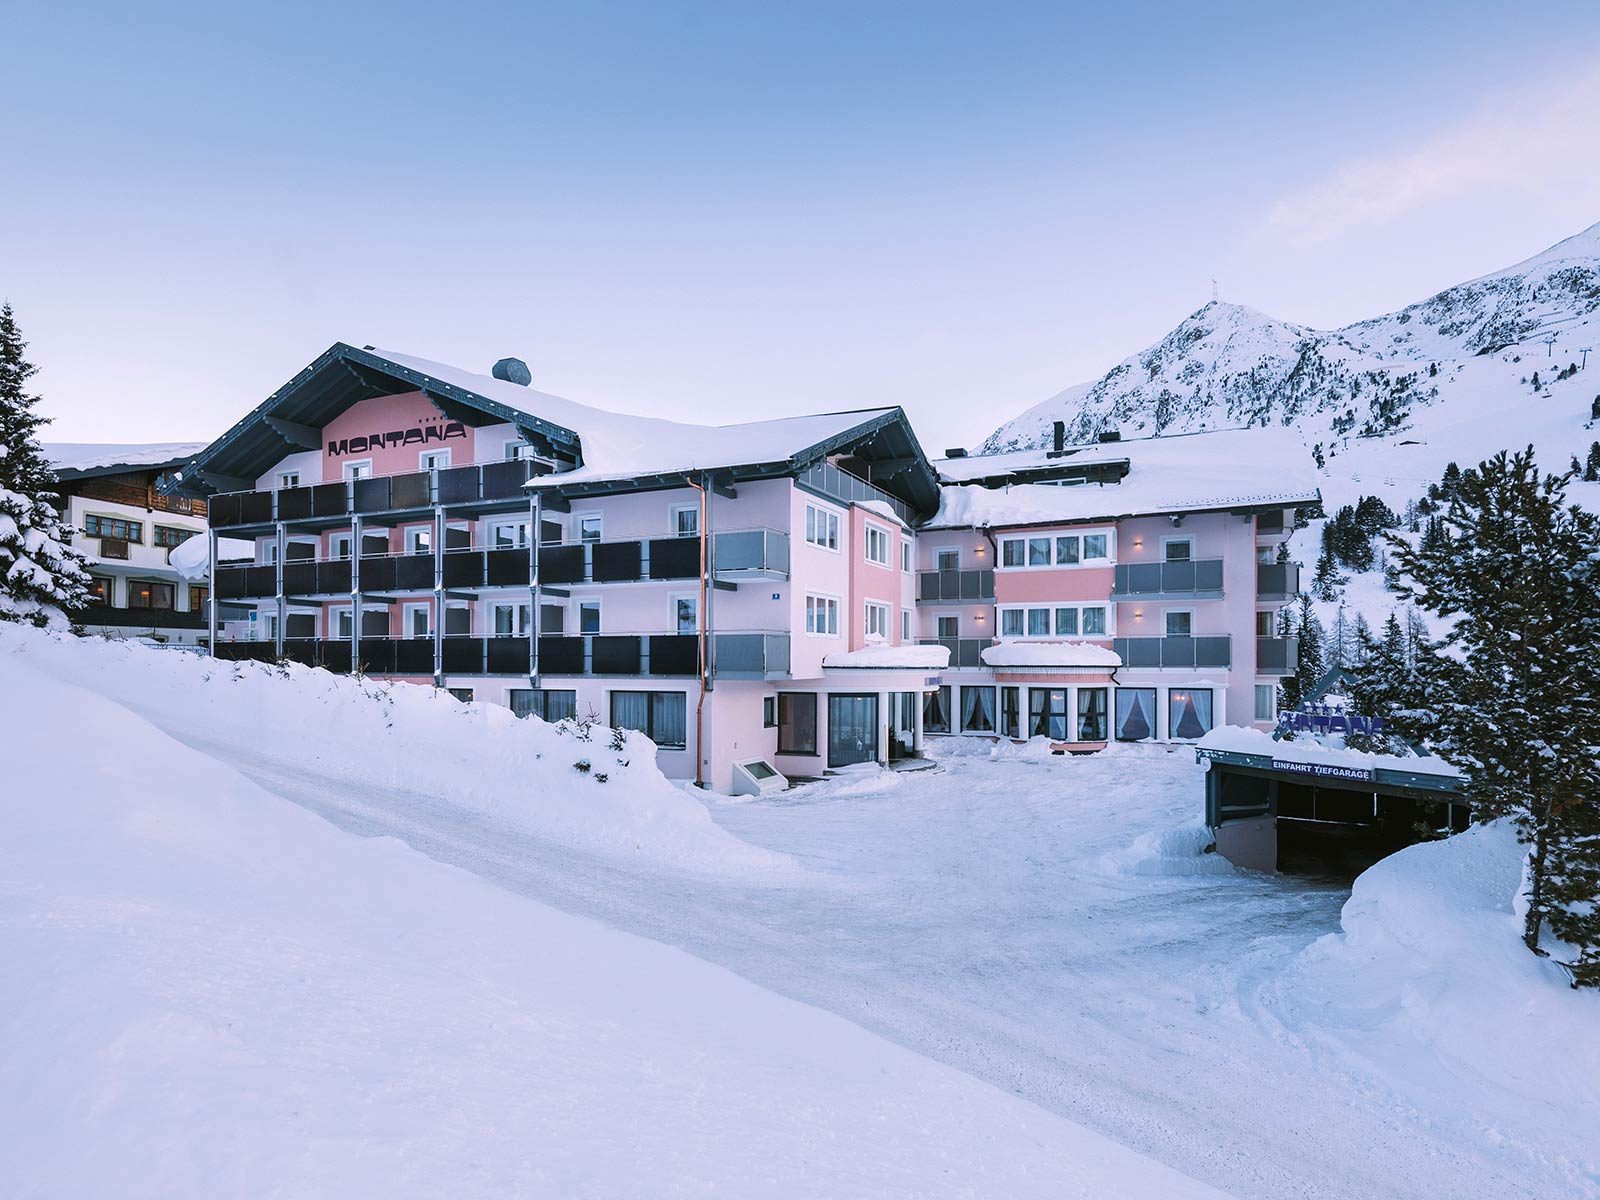 Familienurlaub zum Wohlfühlen: Hotel Montana Obertauern